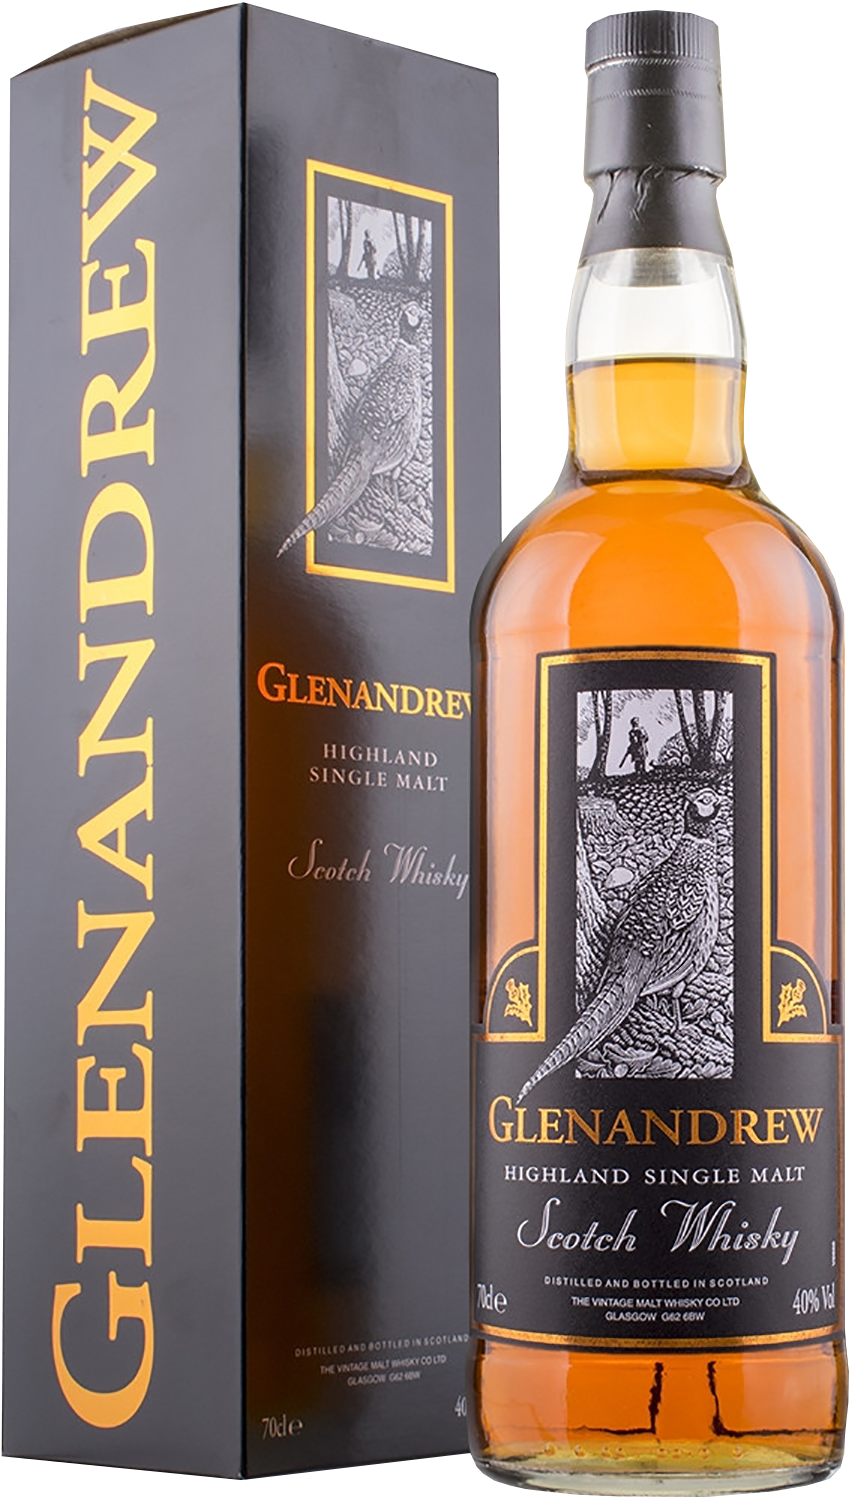 Glenandrew Highland Single Malt Scotch Whisky (gift box)